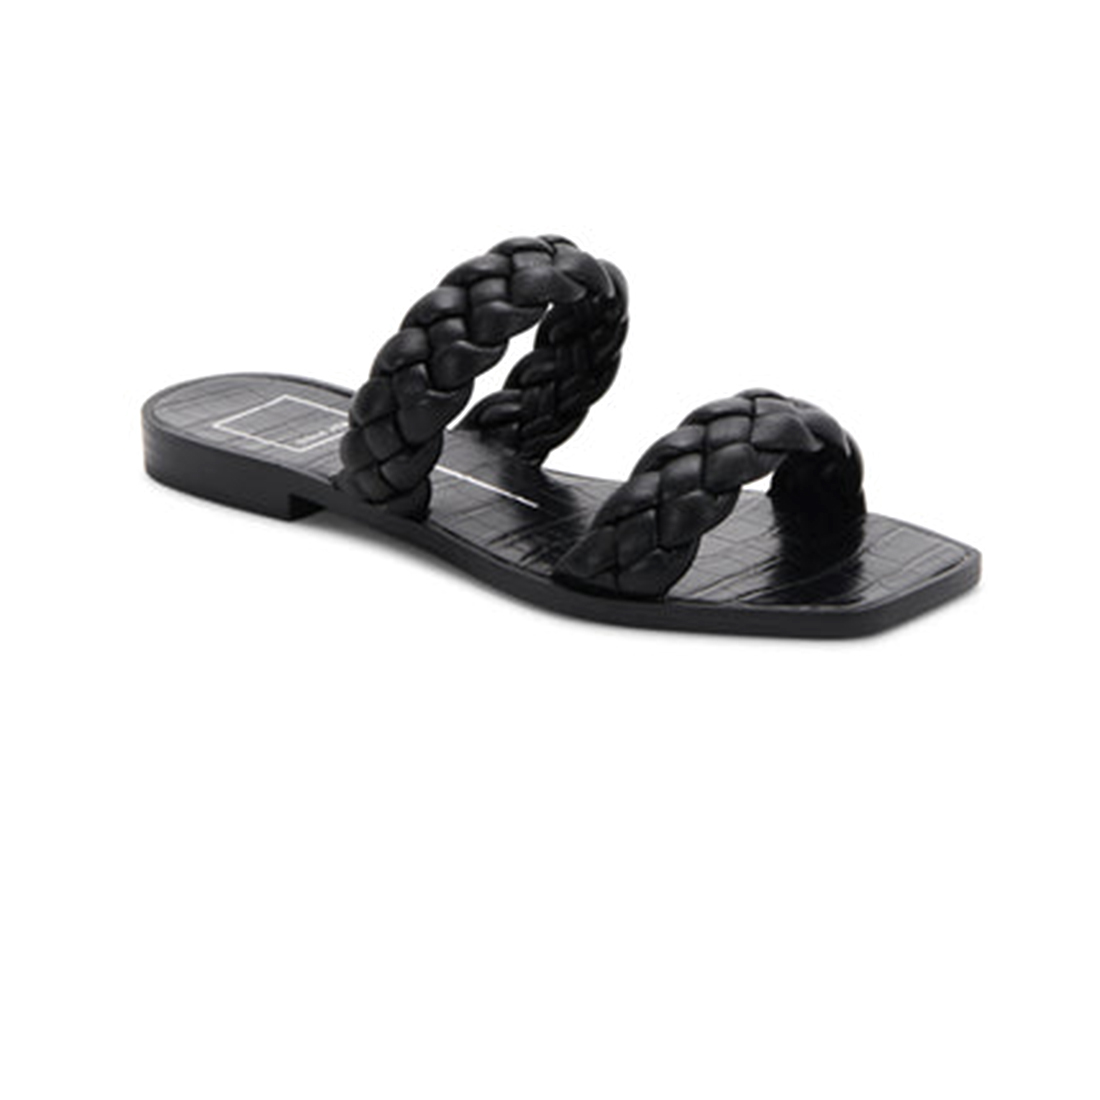 Dolce Vita Indy Sandals in Black Stella | Cotton Island Women's ...